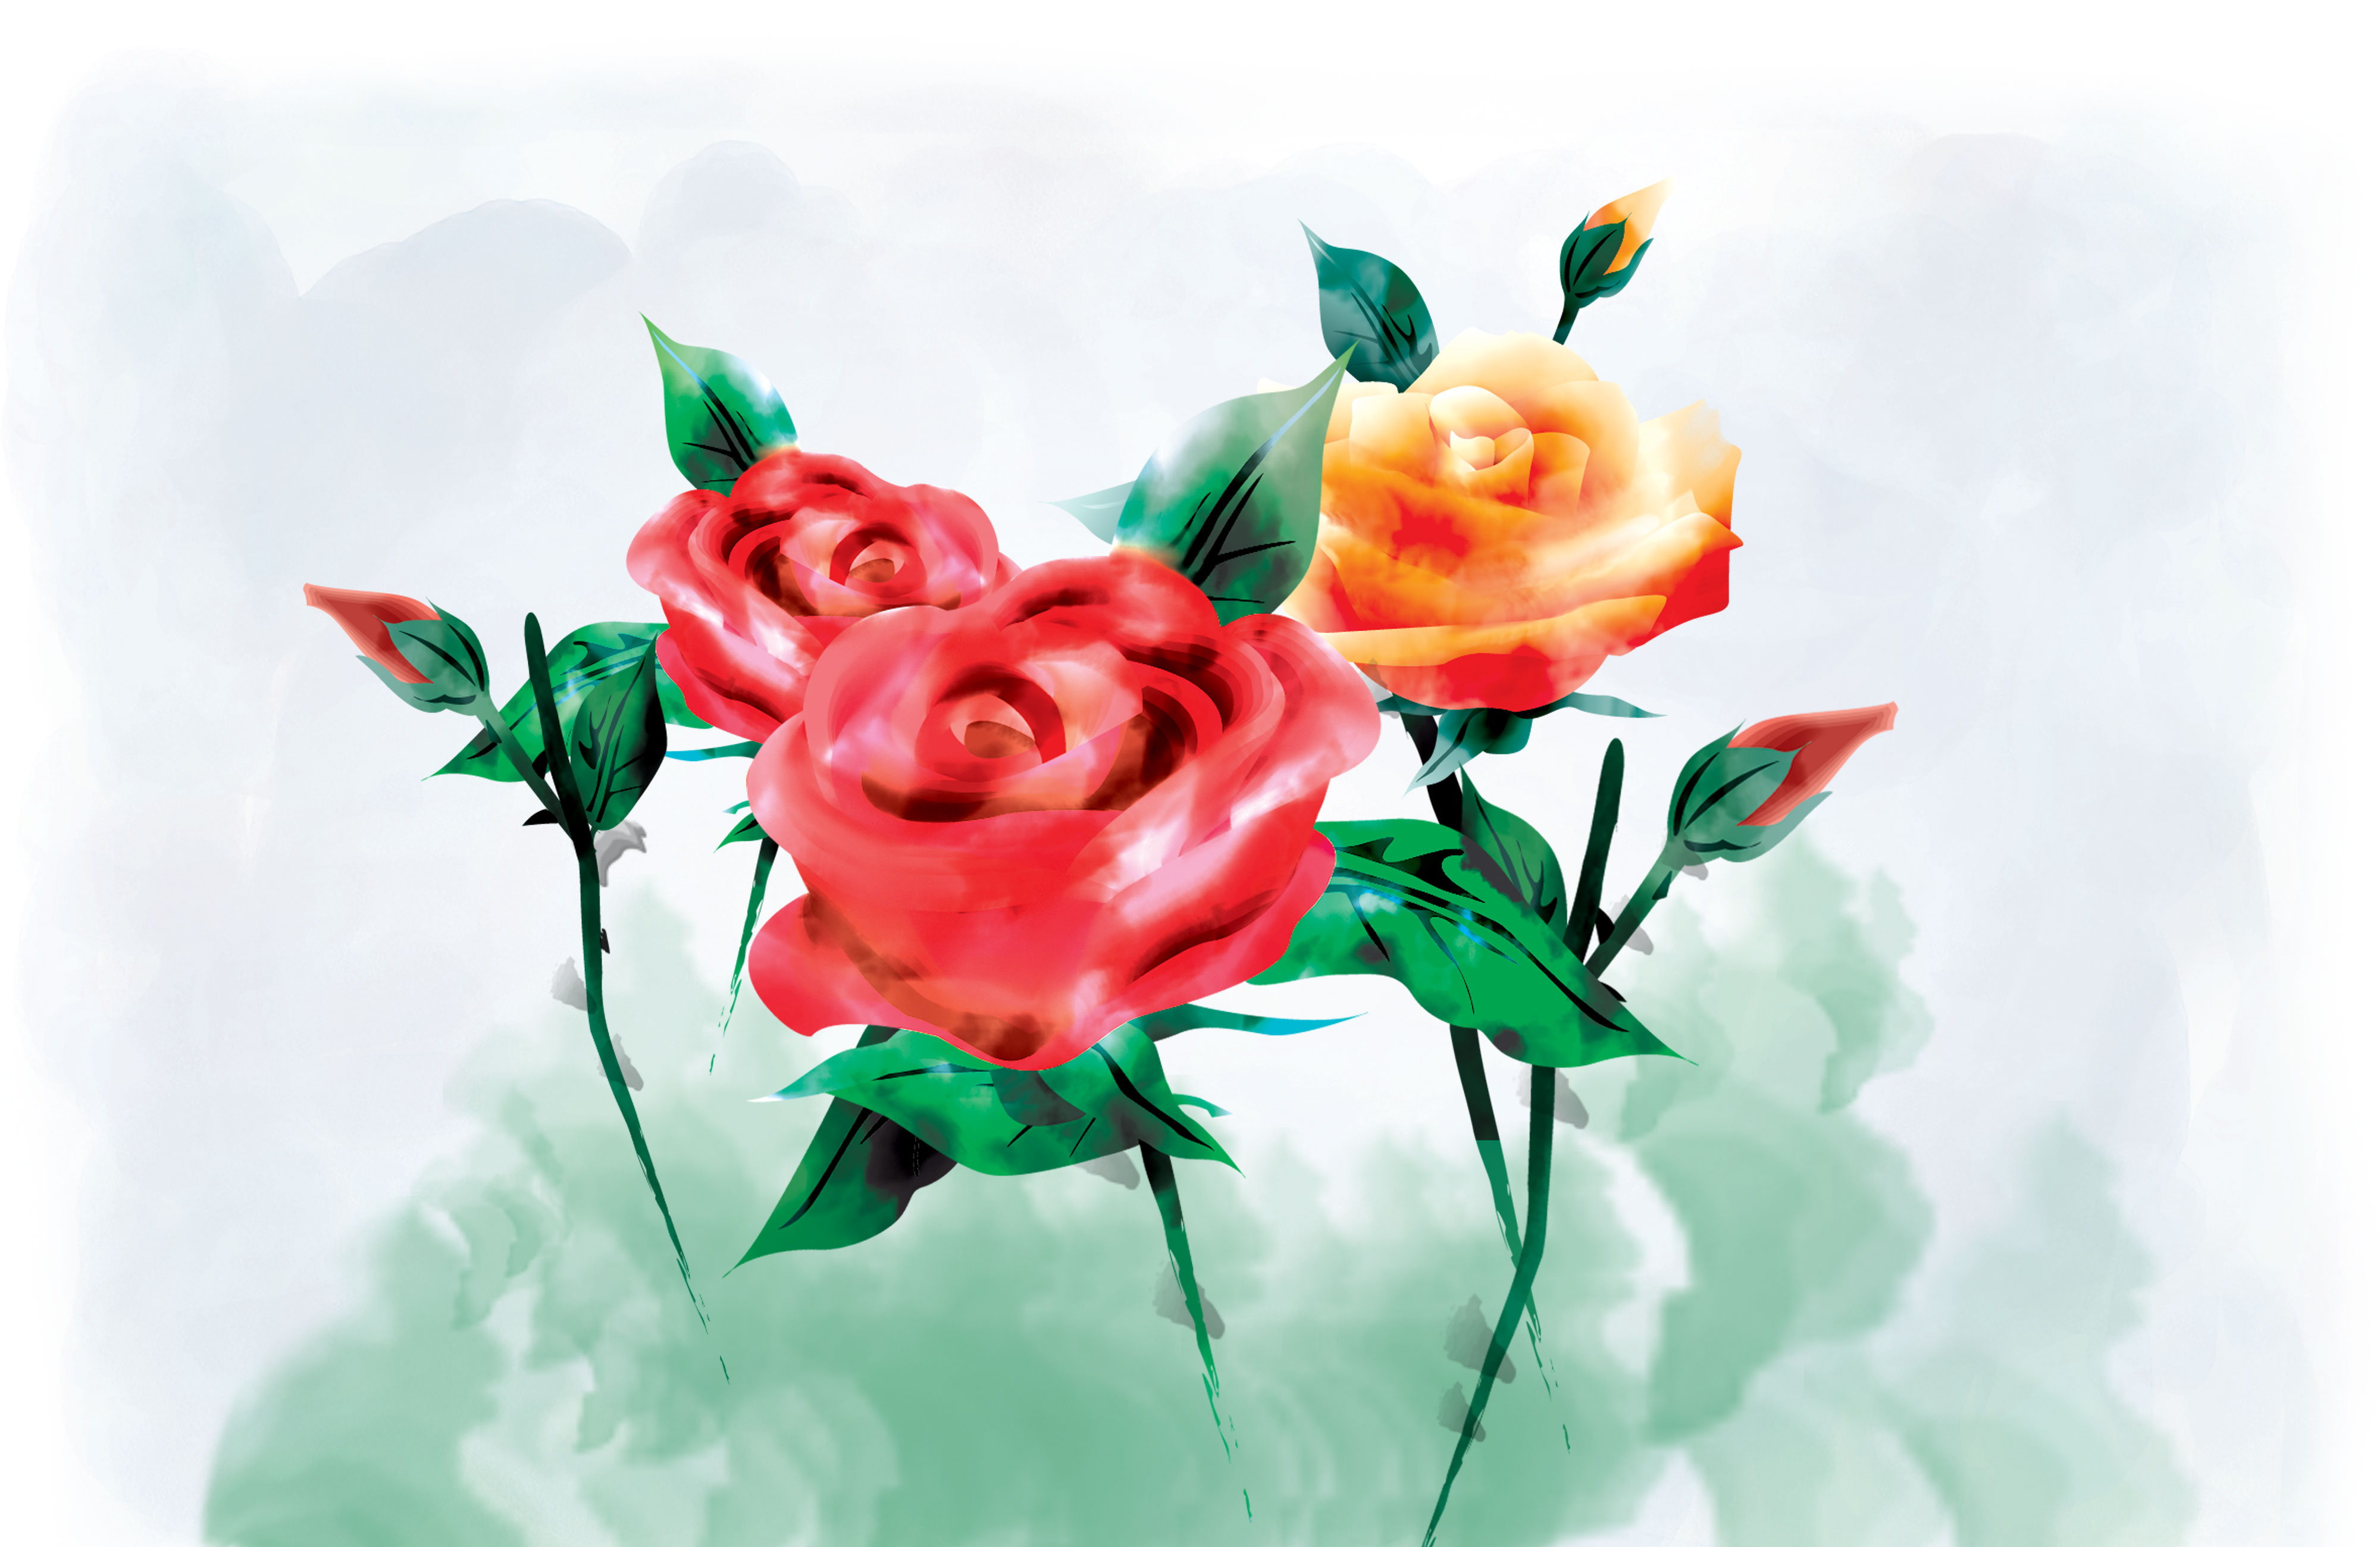 赤い花のイラスト-バラ・茎葉・水彩画風